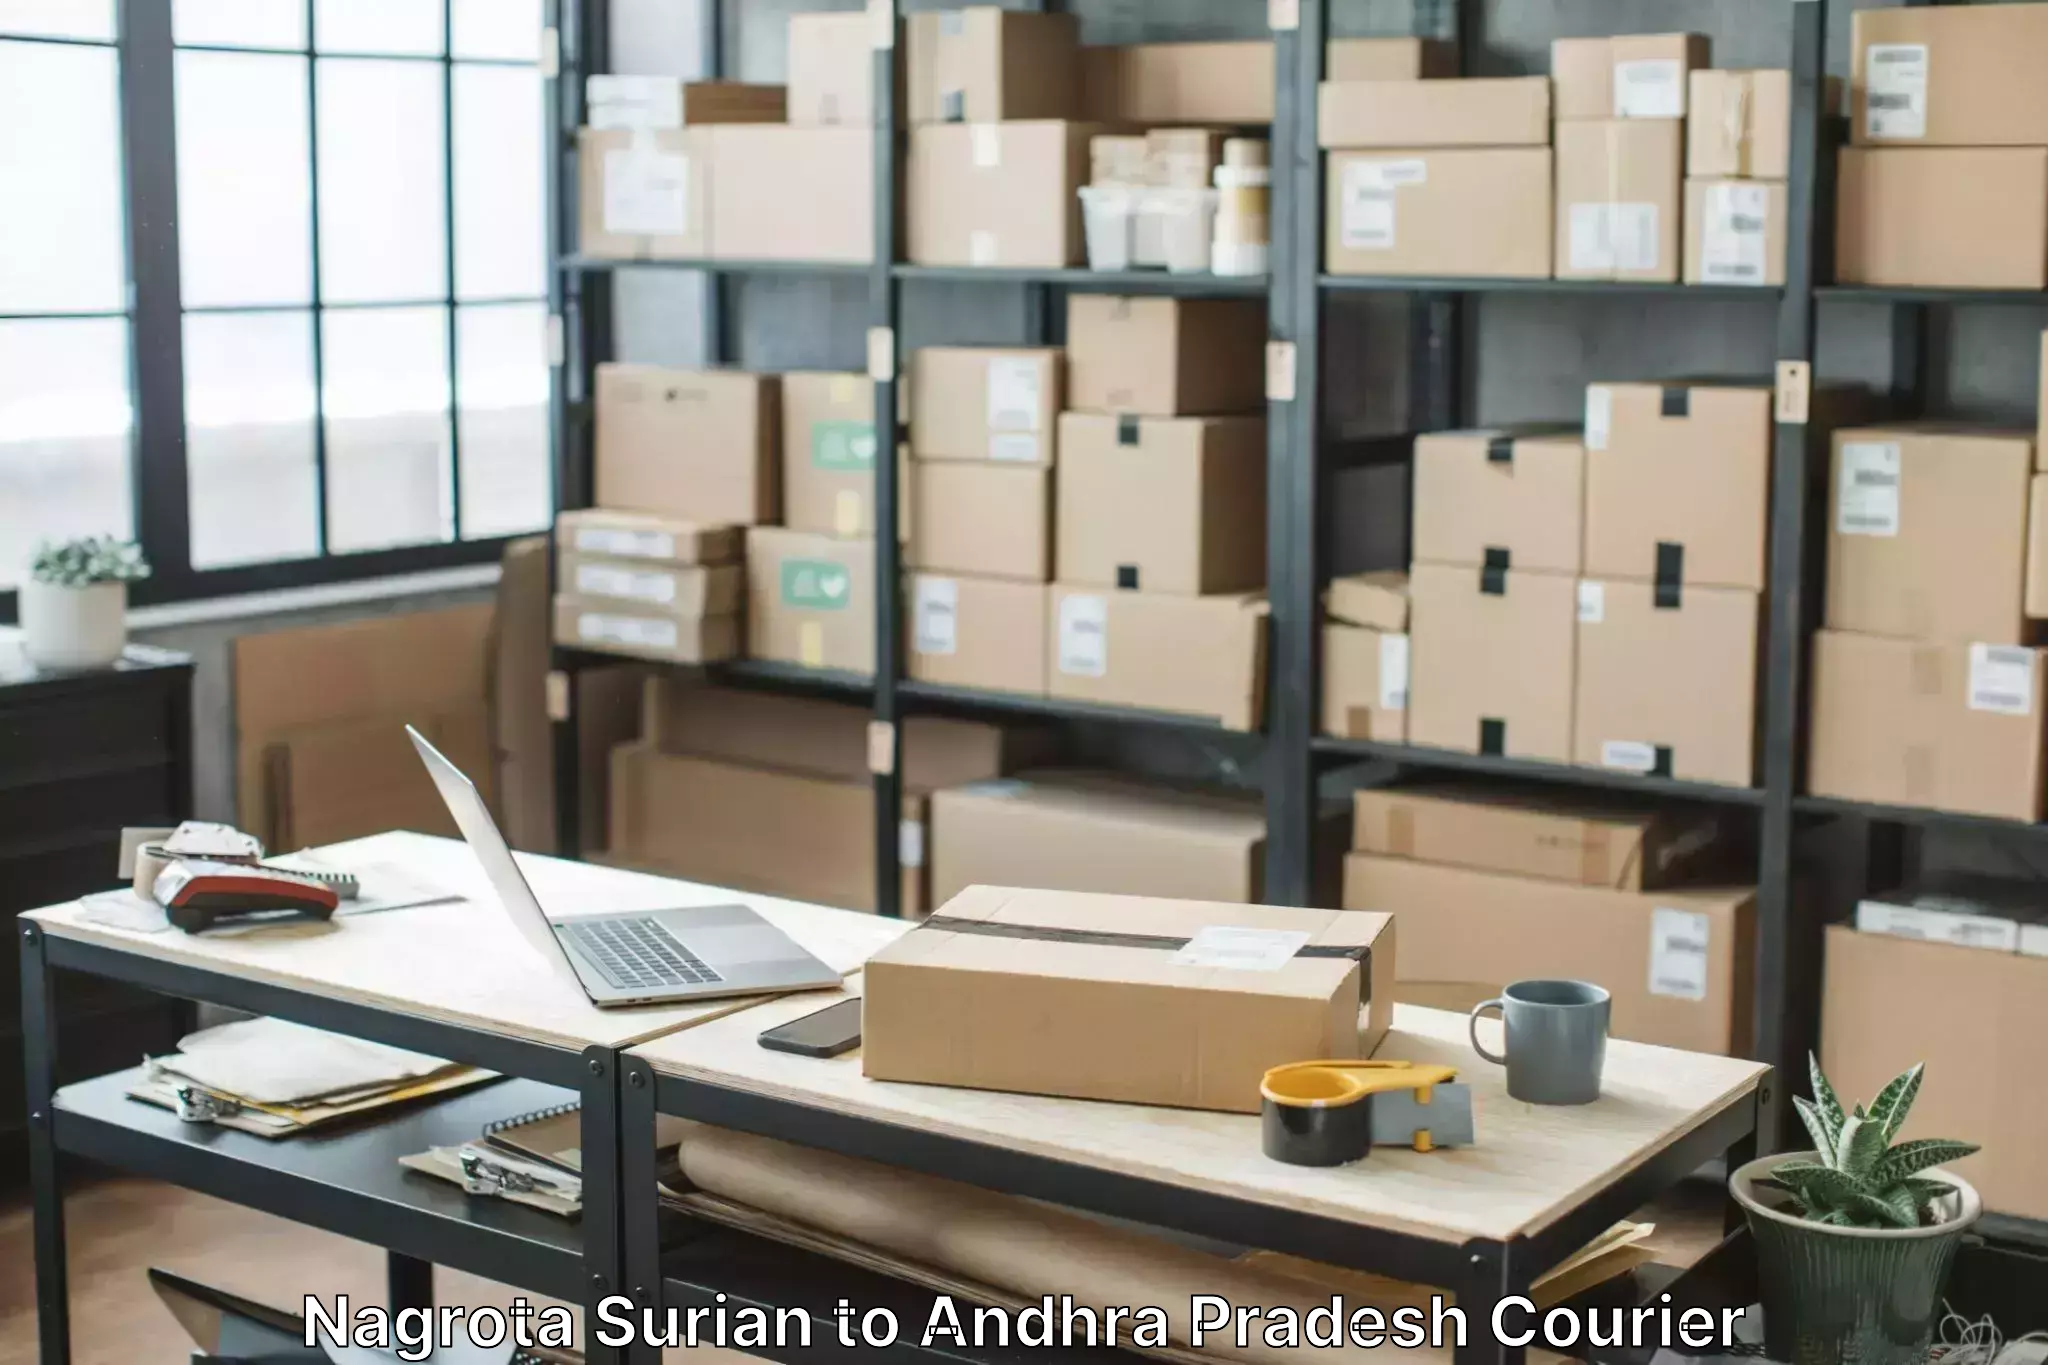 Furniture moving experts Nagrota Surian to Pileru